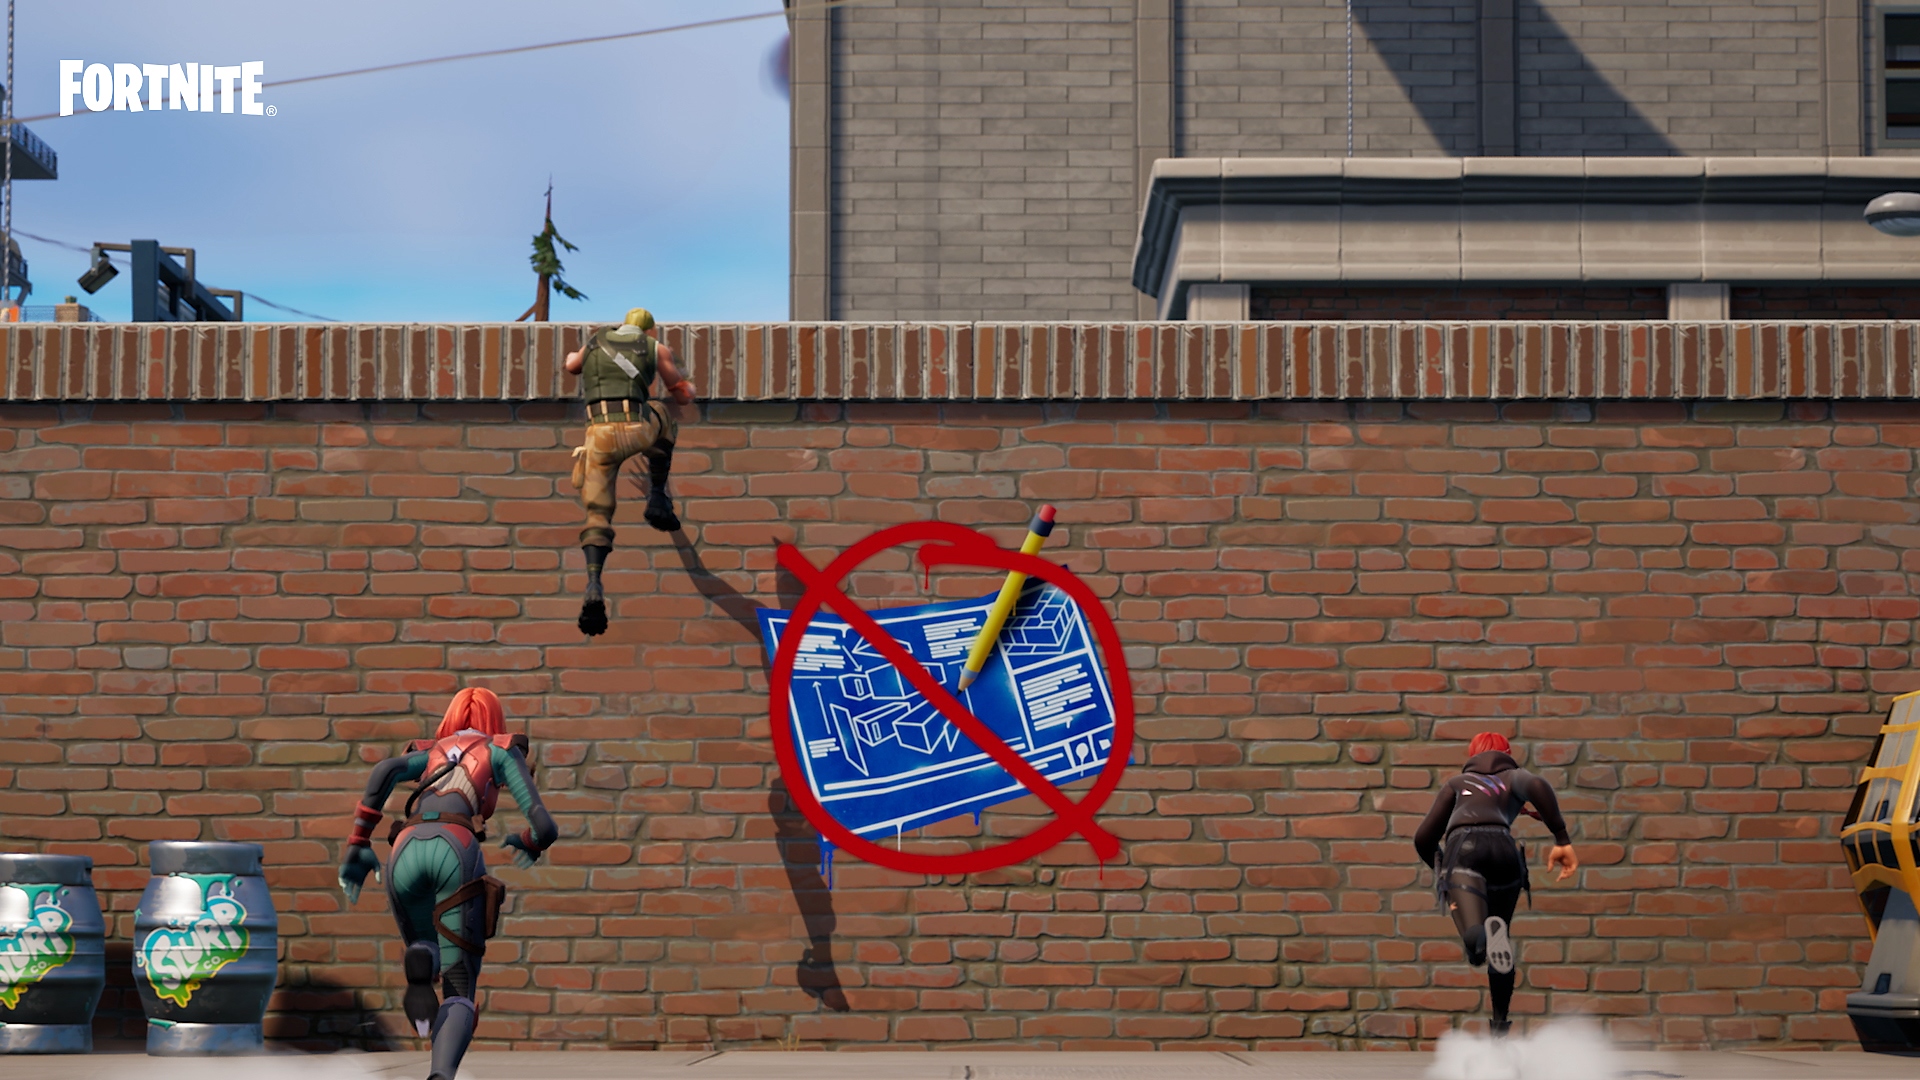 Fortnite Modo Construção Zero - personagens escalando parede